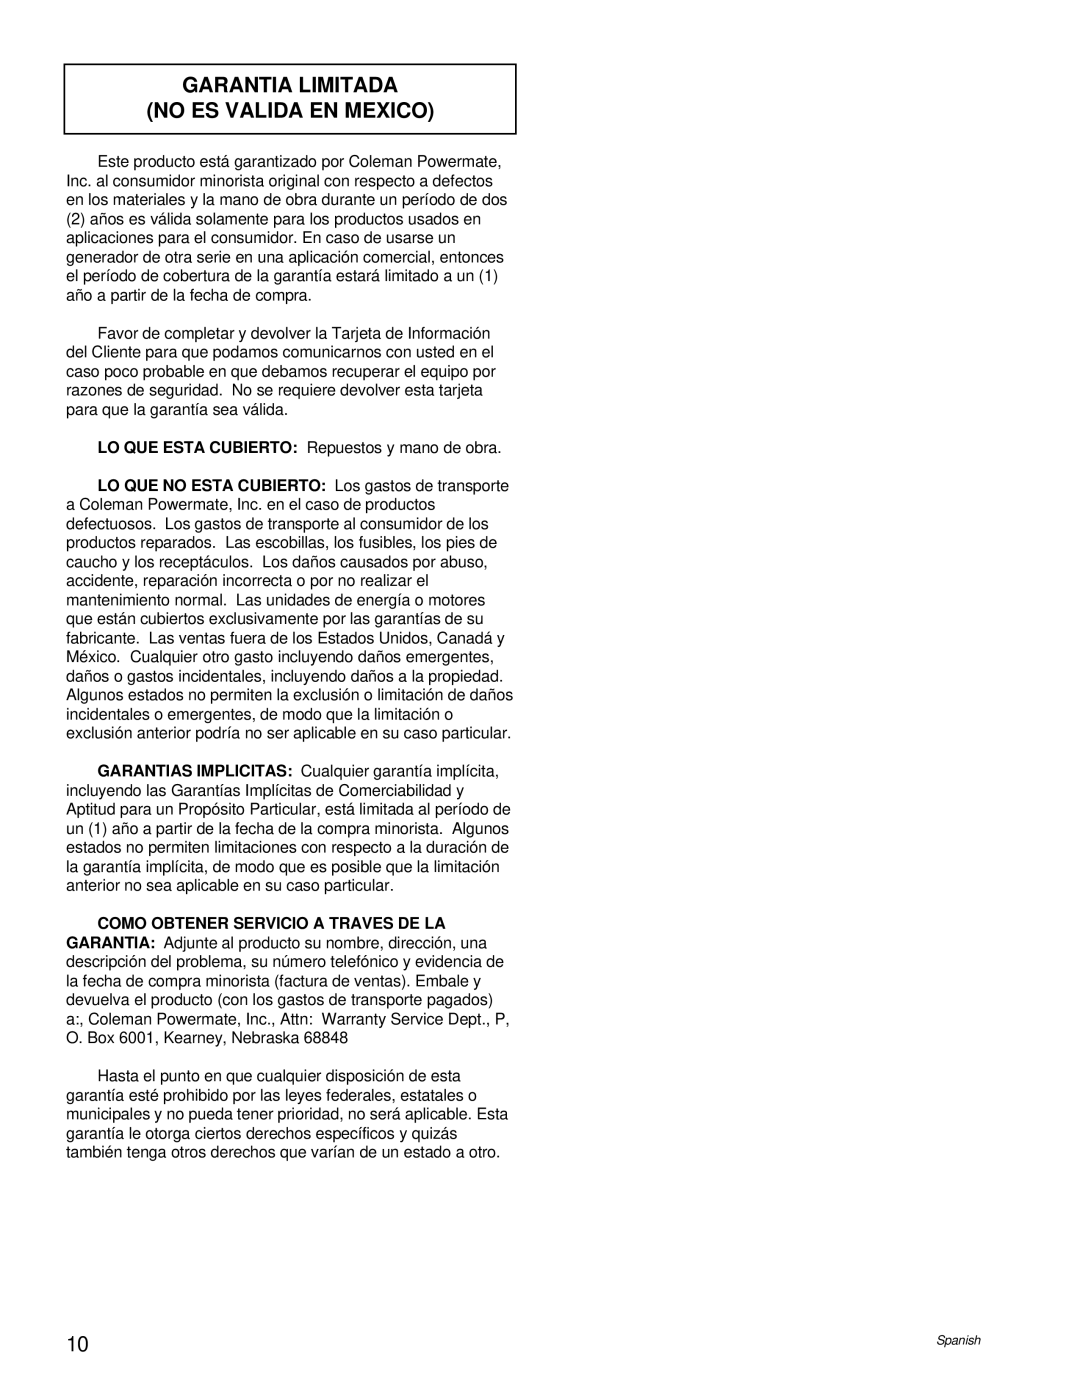 Powermate PL0496504.17 manual Garantia Limitada No Es Valida En Mexico 